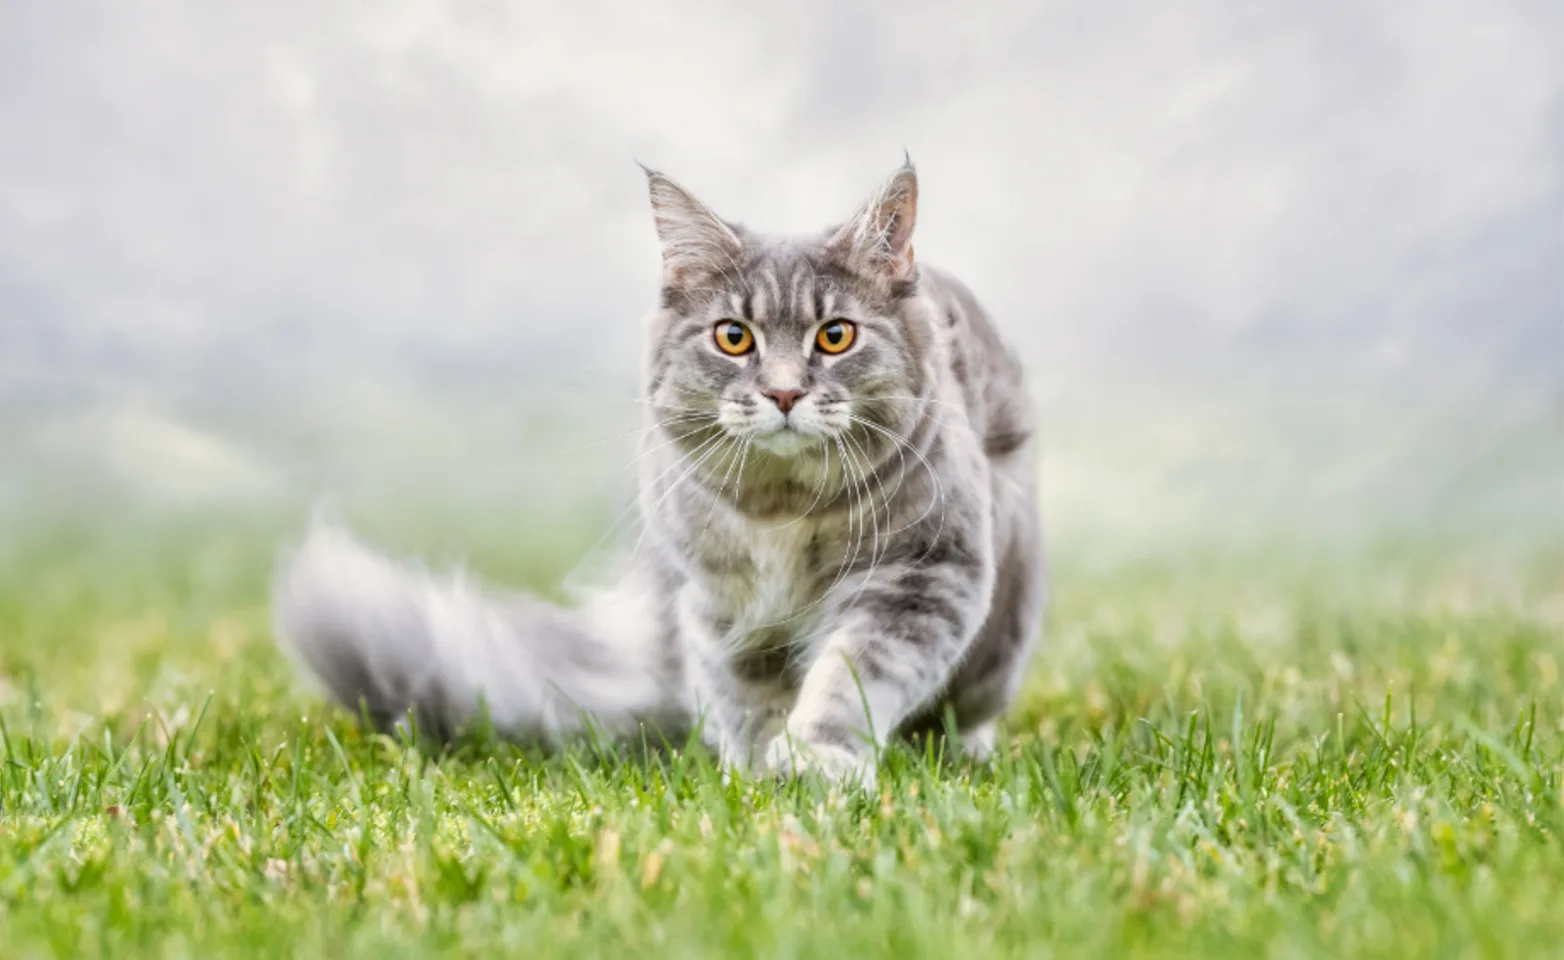 Gray Cat Walking Through Grass & Fog